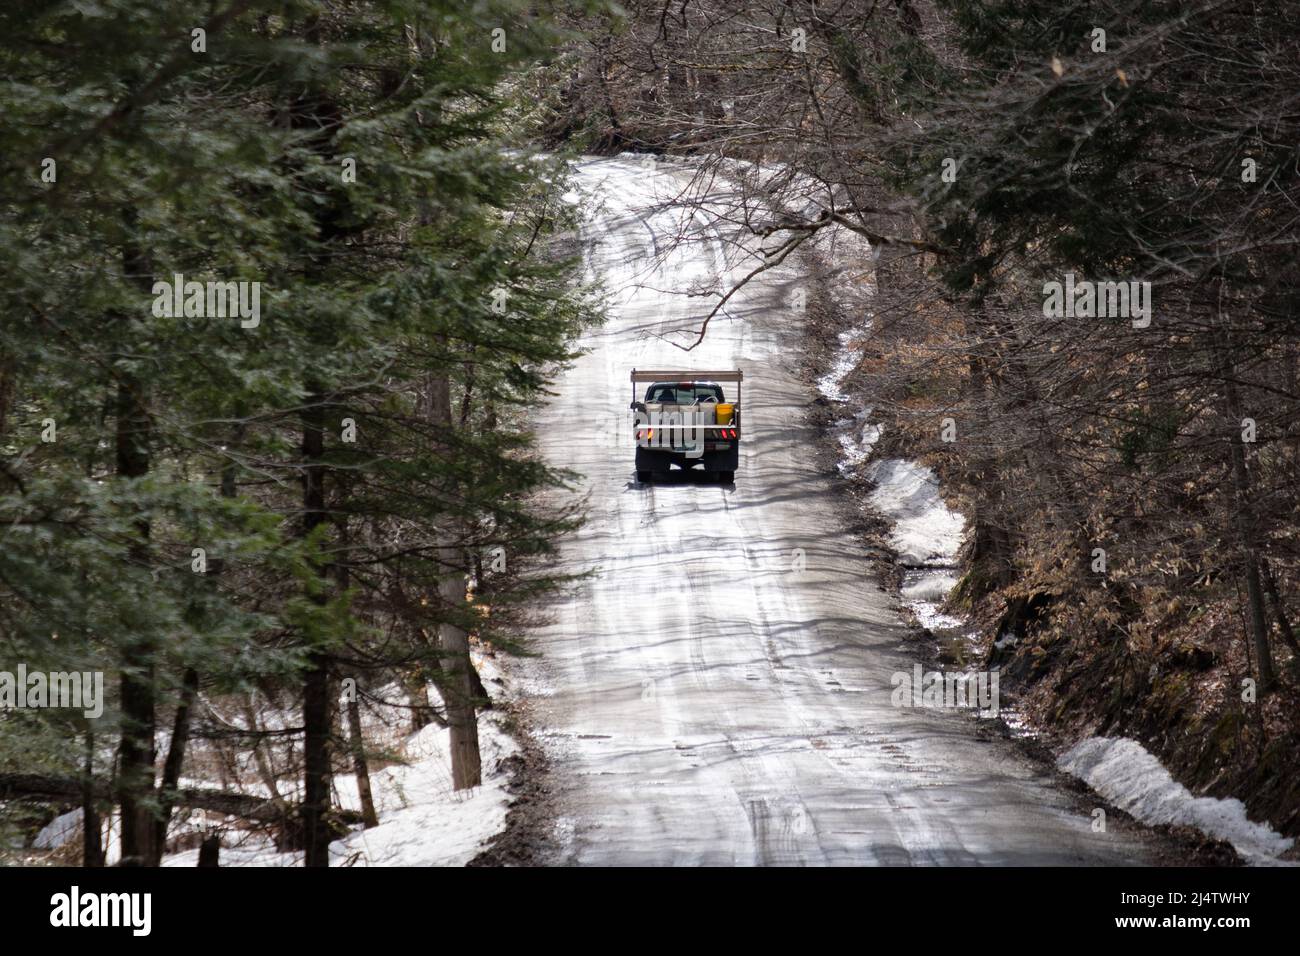 Temporada de barro, el descenso de carreteras de tierra de Vermont en pantanos de barro, sucede cada primavera, generalmente en marzo y abril. Estado de Vermont, EE.UU. Foto de stock